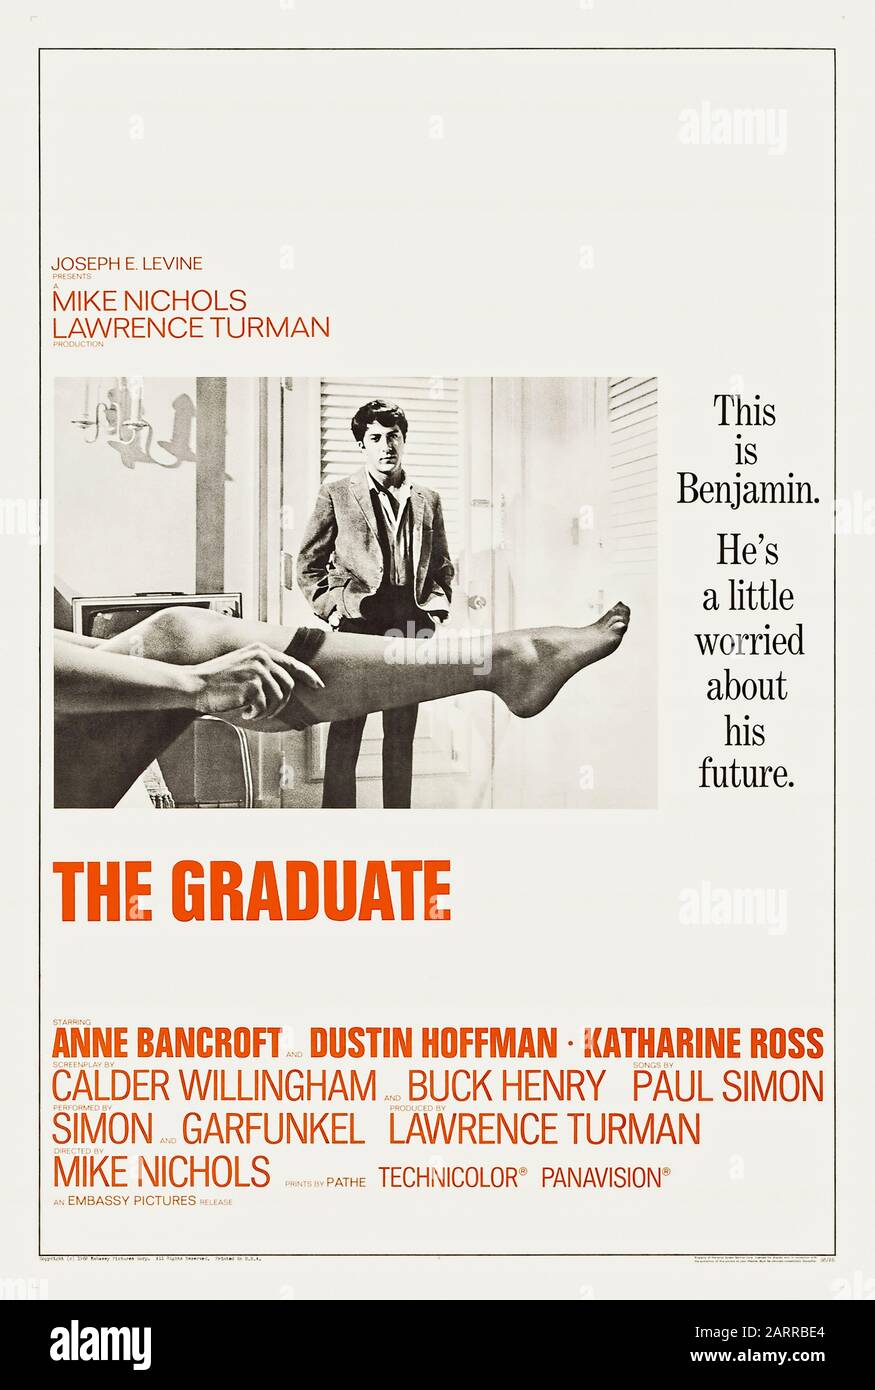 The Graduate (1967) unter der Regie von Mike Nichols und mit Dustin Hoffman, Anne Bancroft, Katharine Ross und William Daniels in den Hauptrollen. Erfolgreiche und von Kritikern gelobte Adaption von Charles Webbs Roman über einen kürzlich erschienenen Absolventen, der von der älteren Frau Robinson verführt wird, bevor er sich in ihre Tochter verliebt. Stockfoto